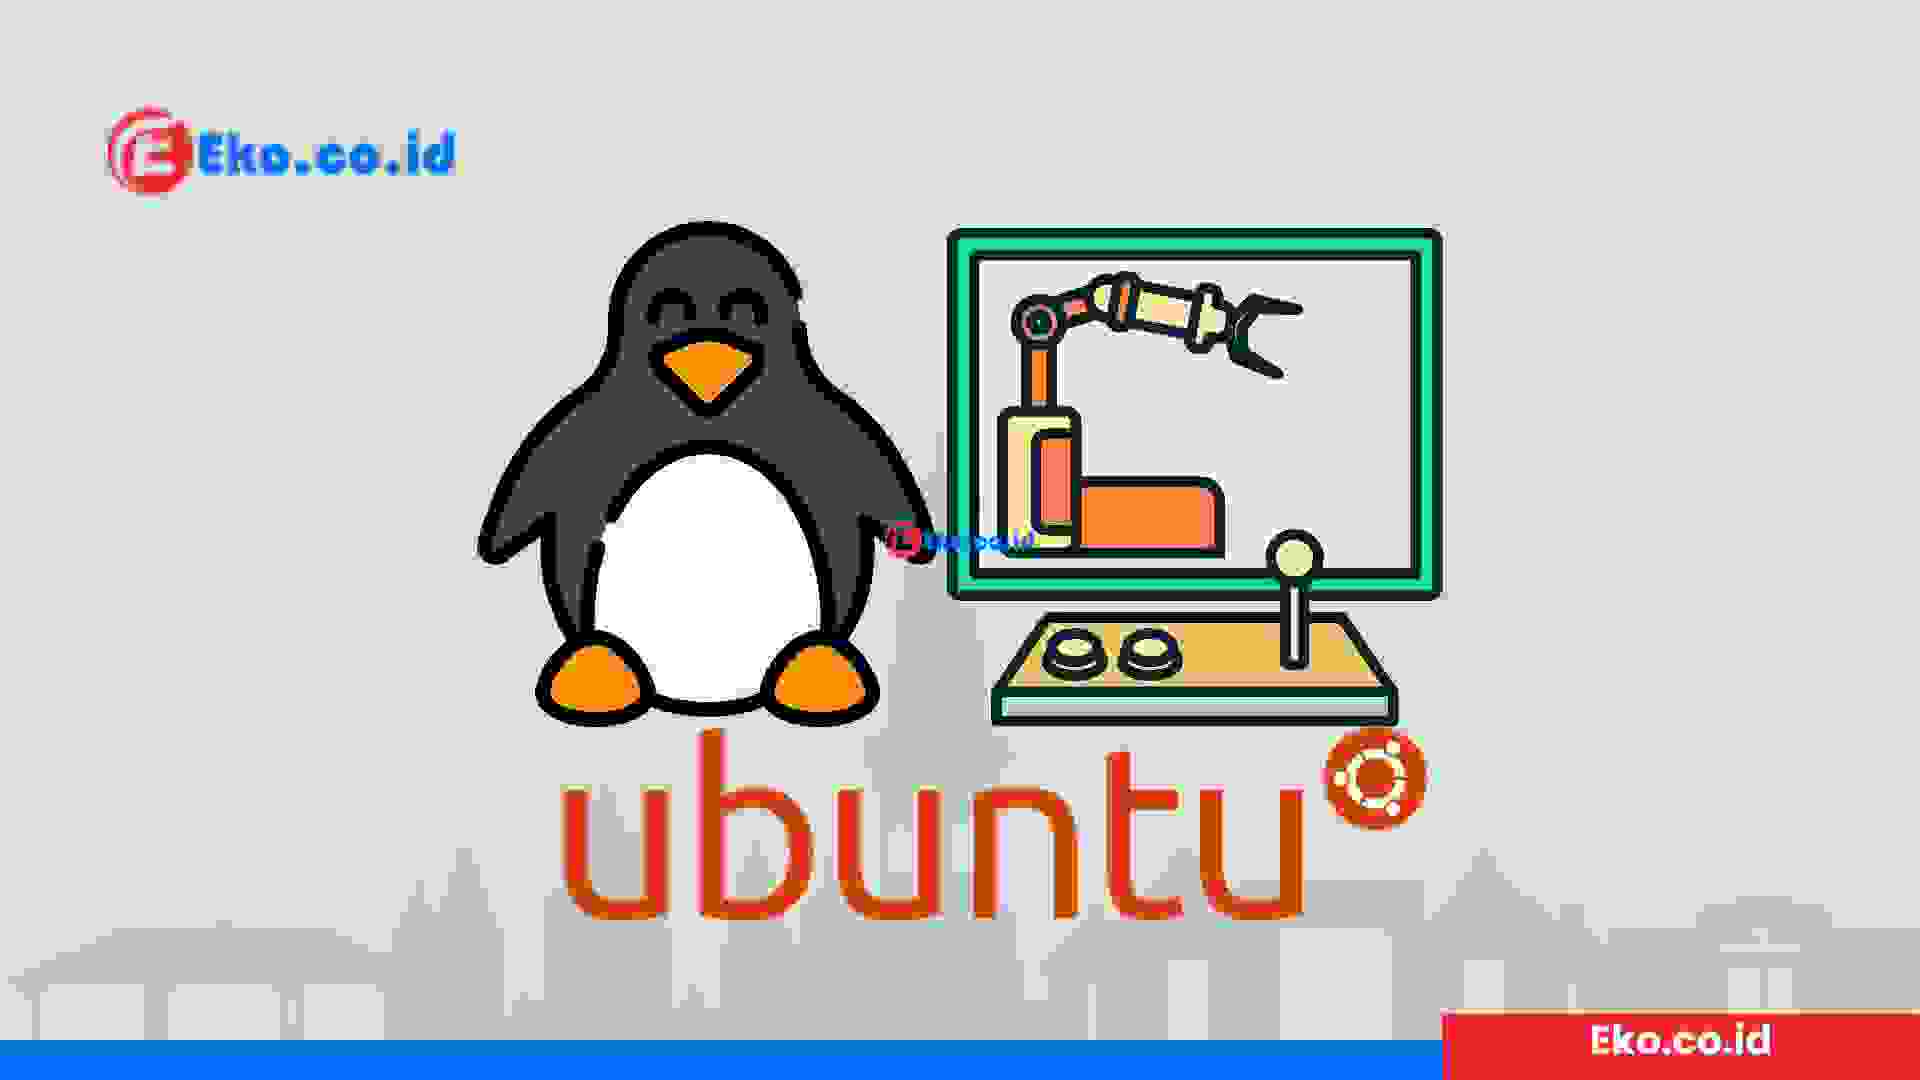 How to run an Ubuntu Desktop virtual machine